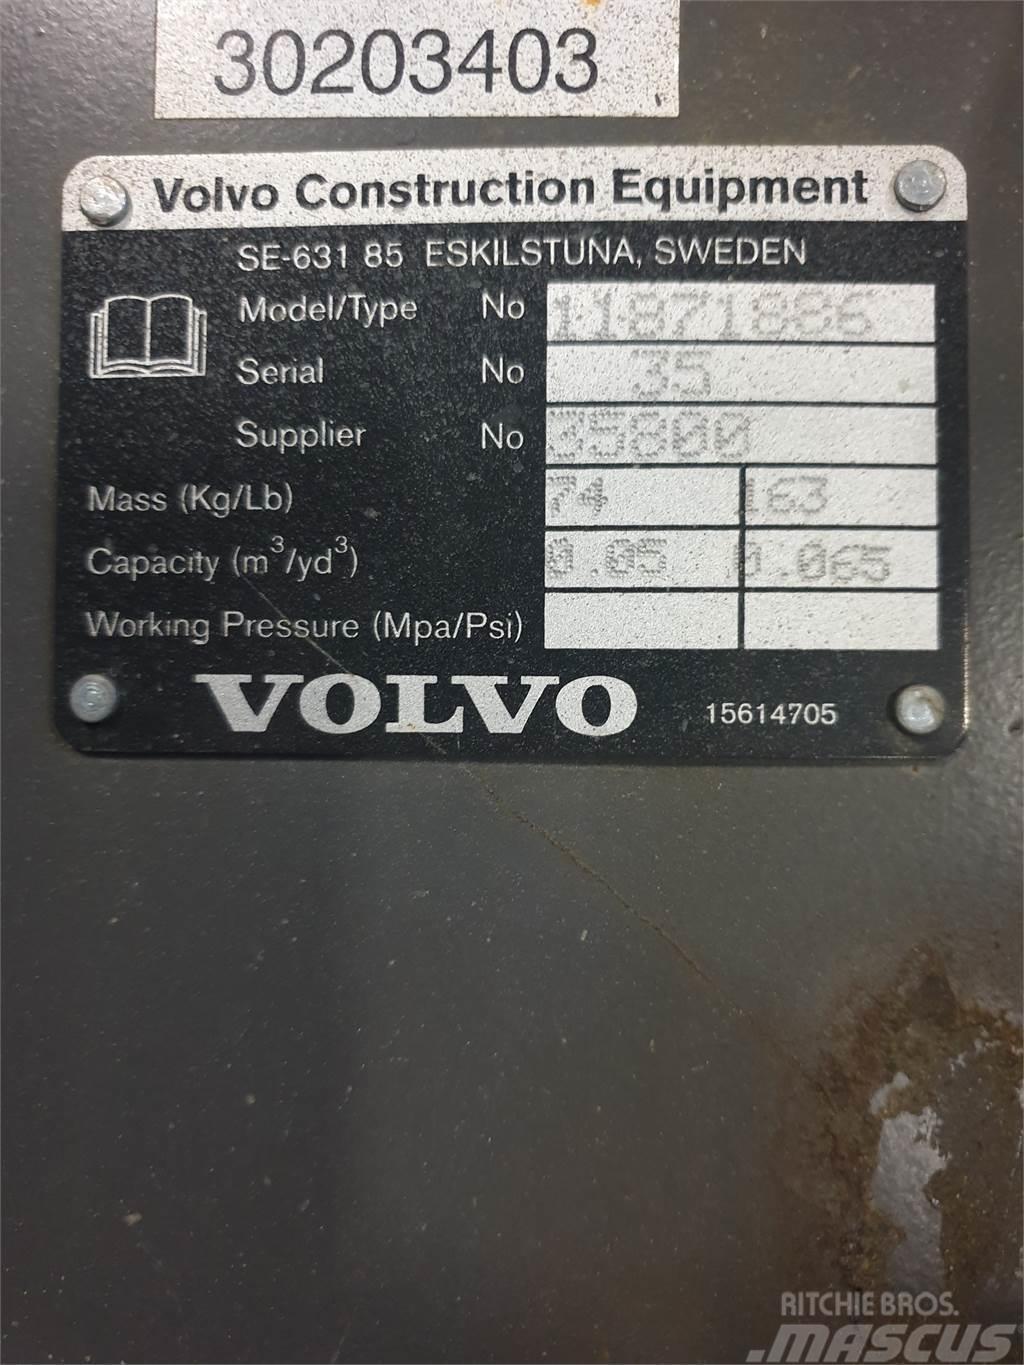 Volvo Kabelskopa S40 300mm Cucharones